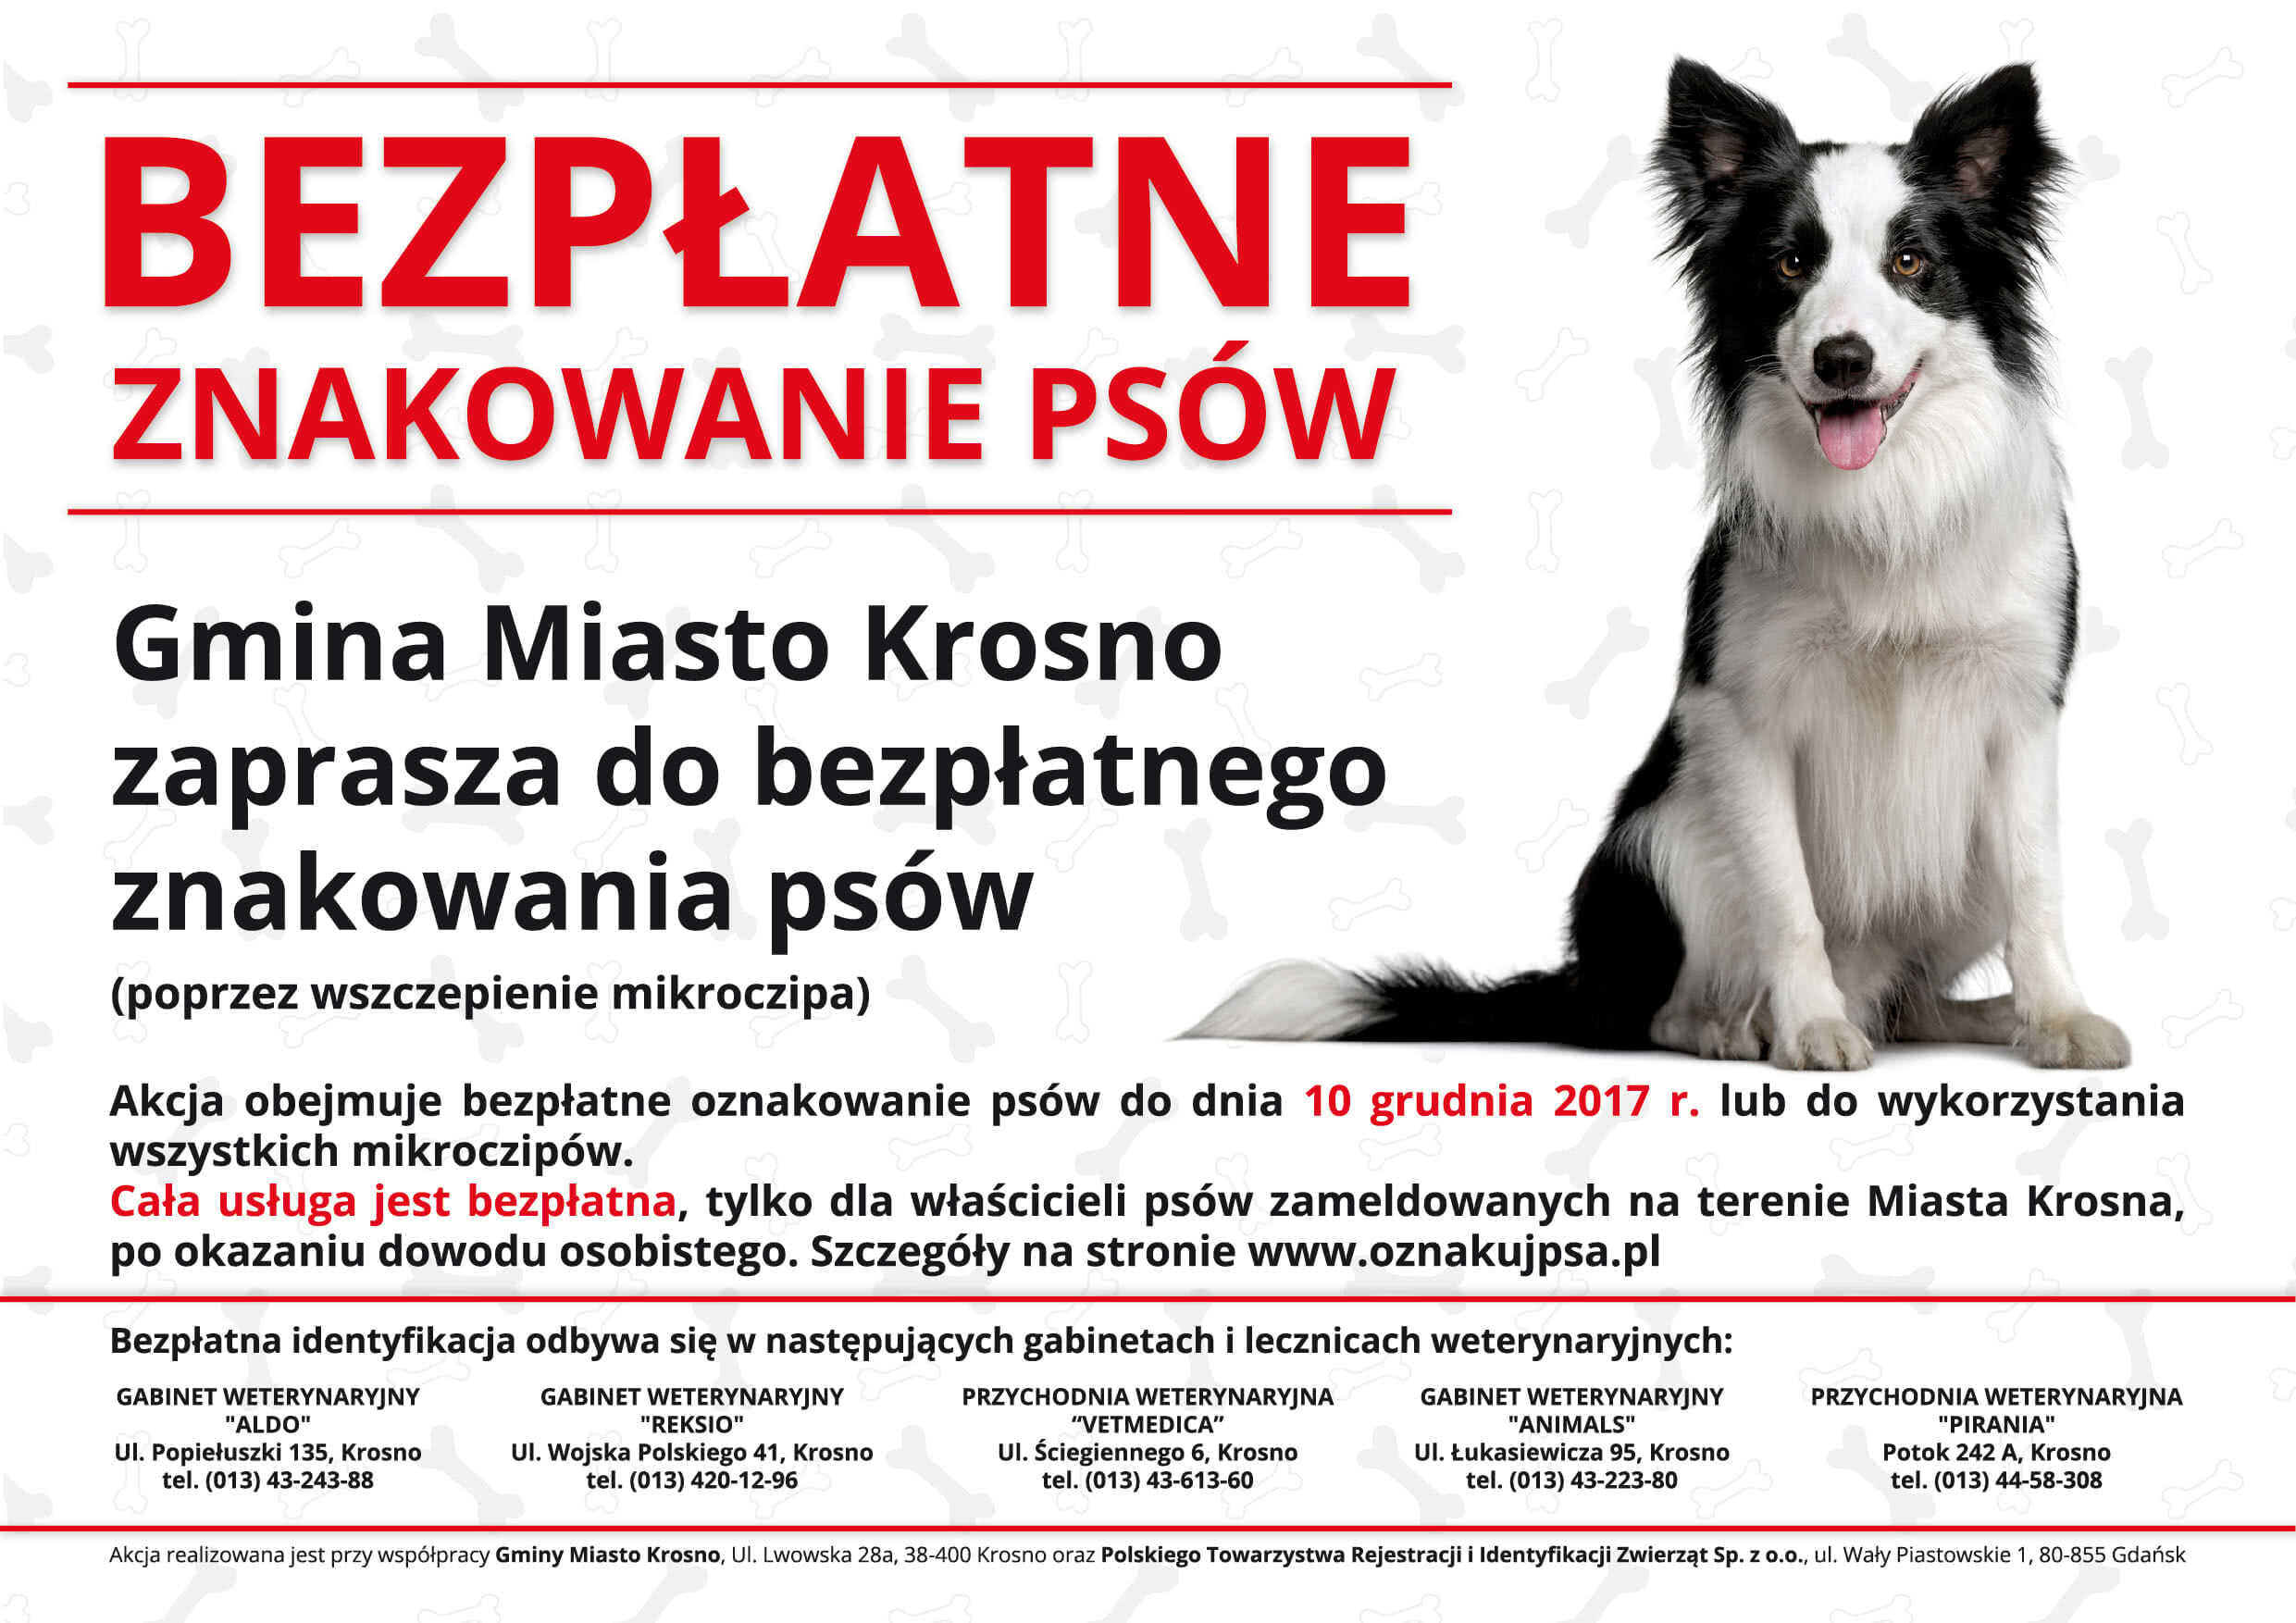 Bezpłatne znakowanie psów w Krośnie